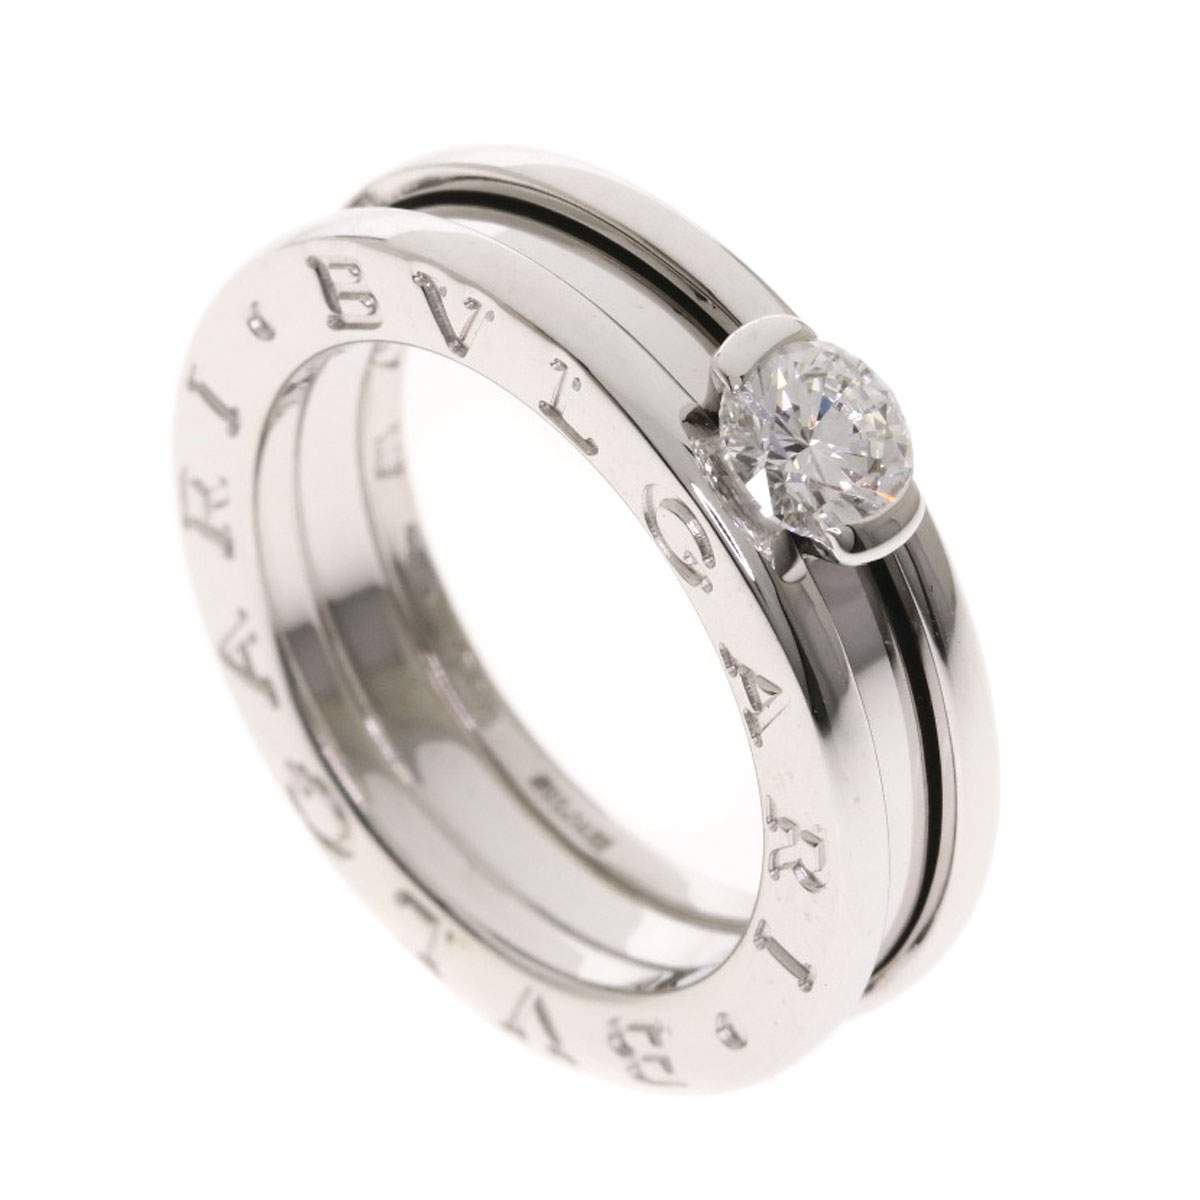 bvlgari engagement ring price range off 